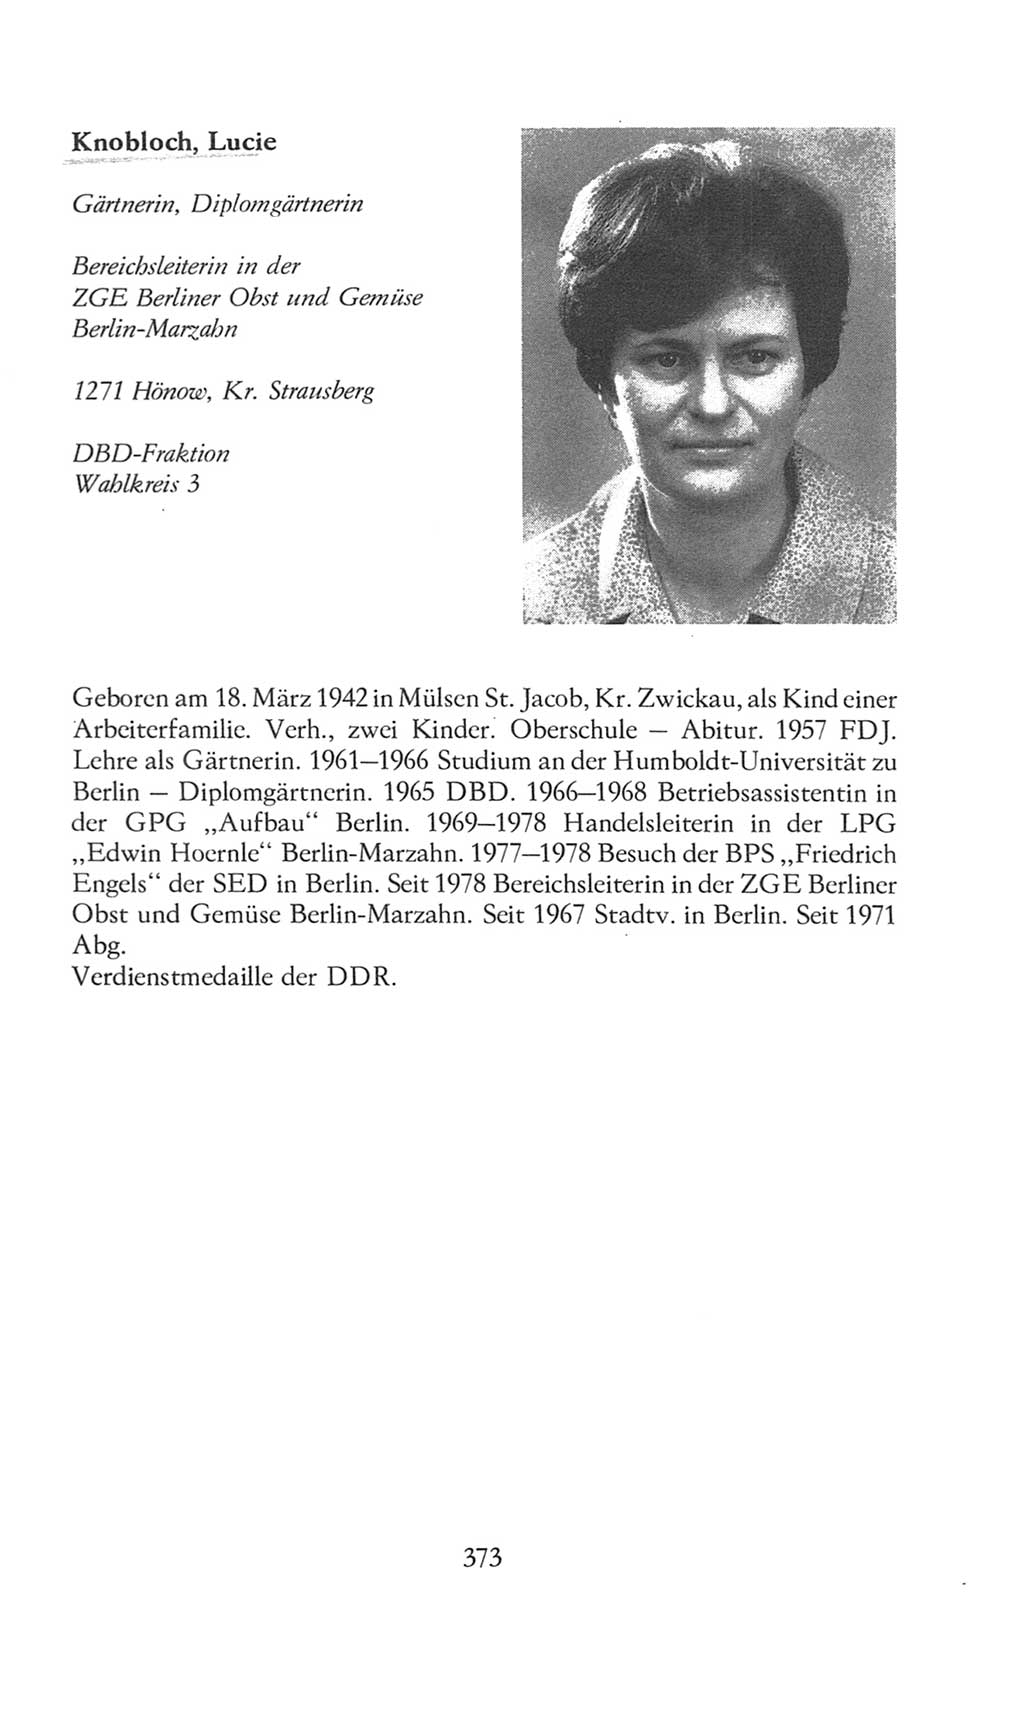 Volkskammer (VK) der Deutschen Demokratischen Republik (DDR), 8. Wahlperiode 1981-1986, Seite 373 (VK. DDR 8. WP. 1981-1986, S. 373)